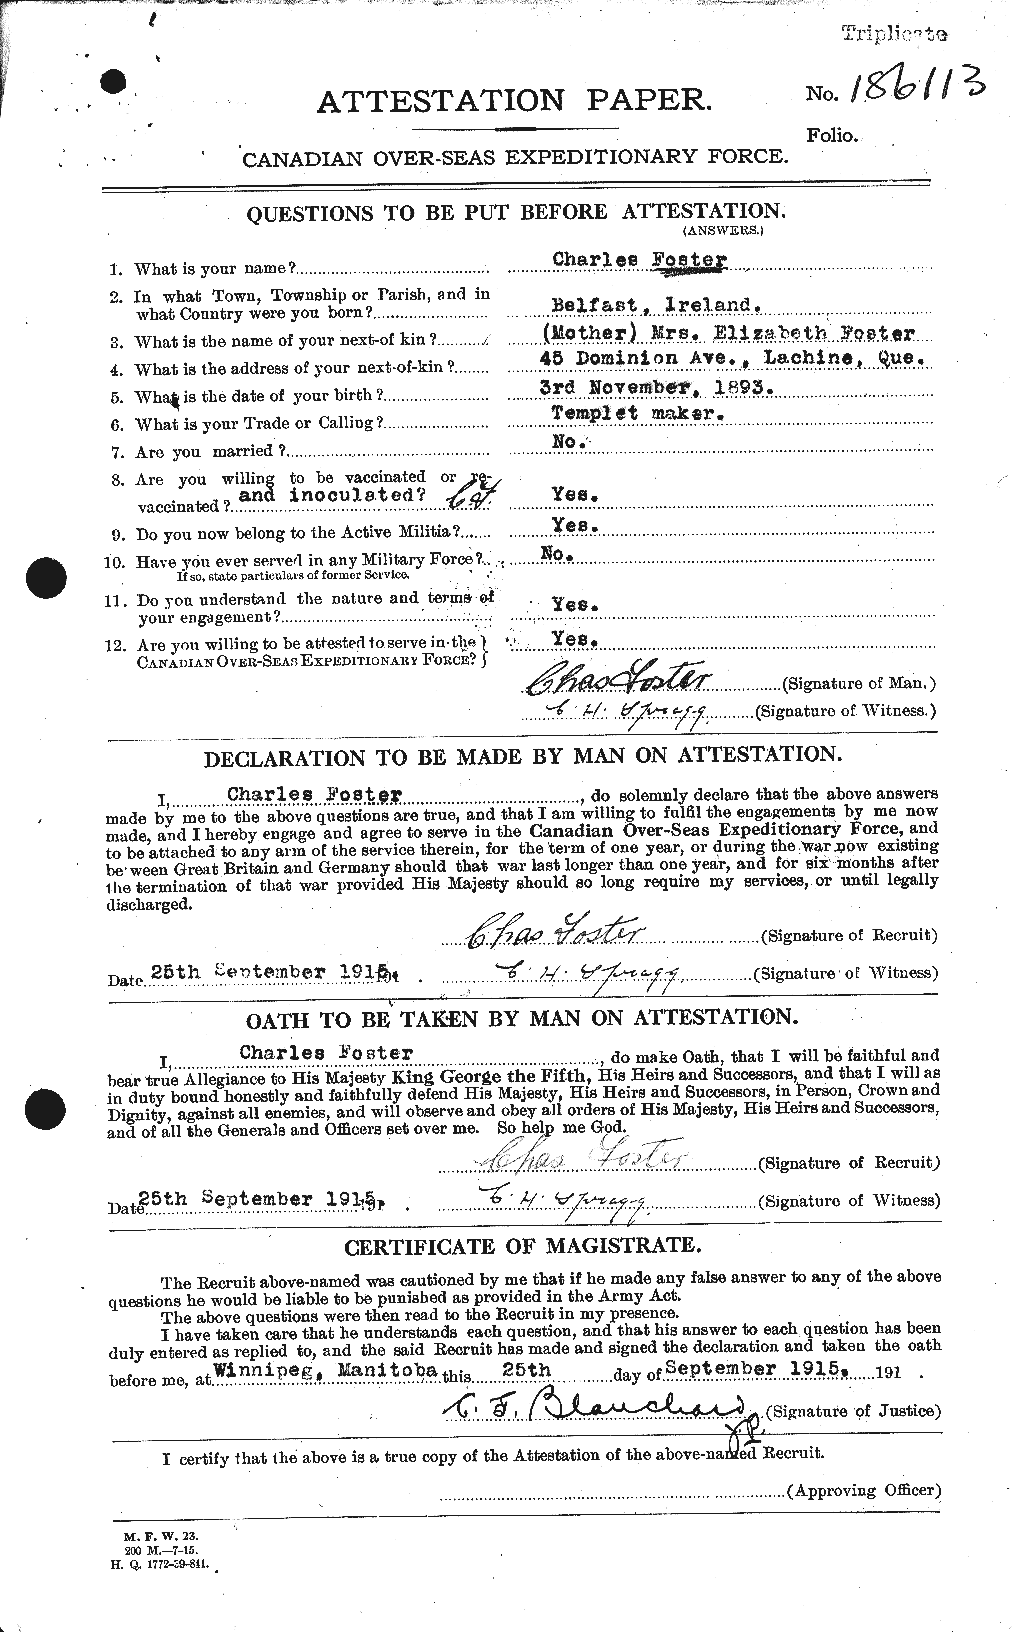 Dossiers du Personnel de la Première Guerre mondiale - CEC 330498a